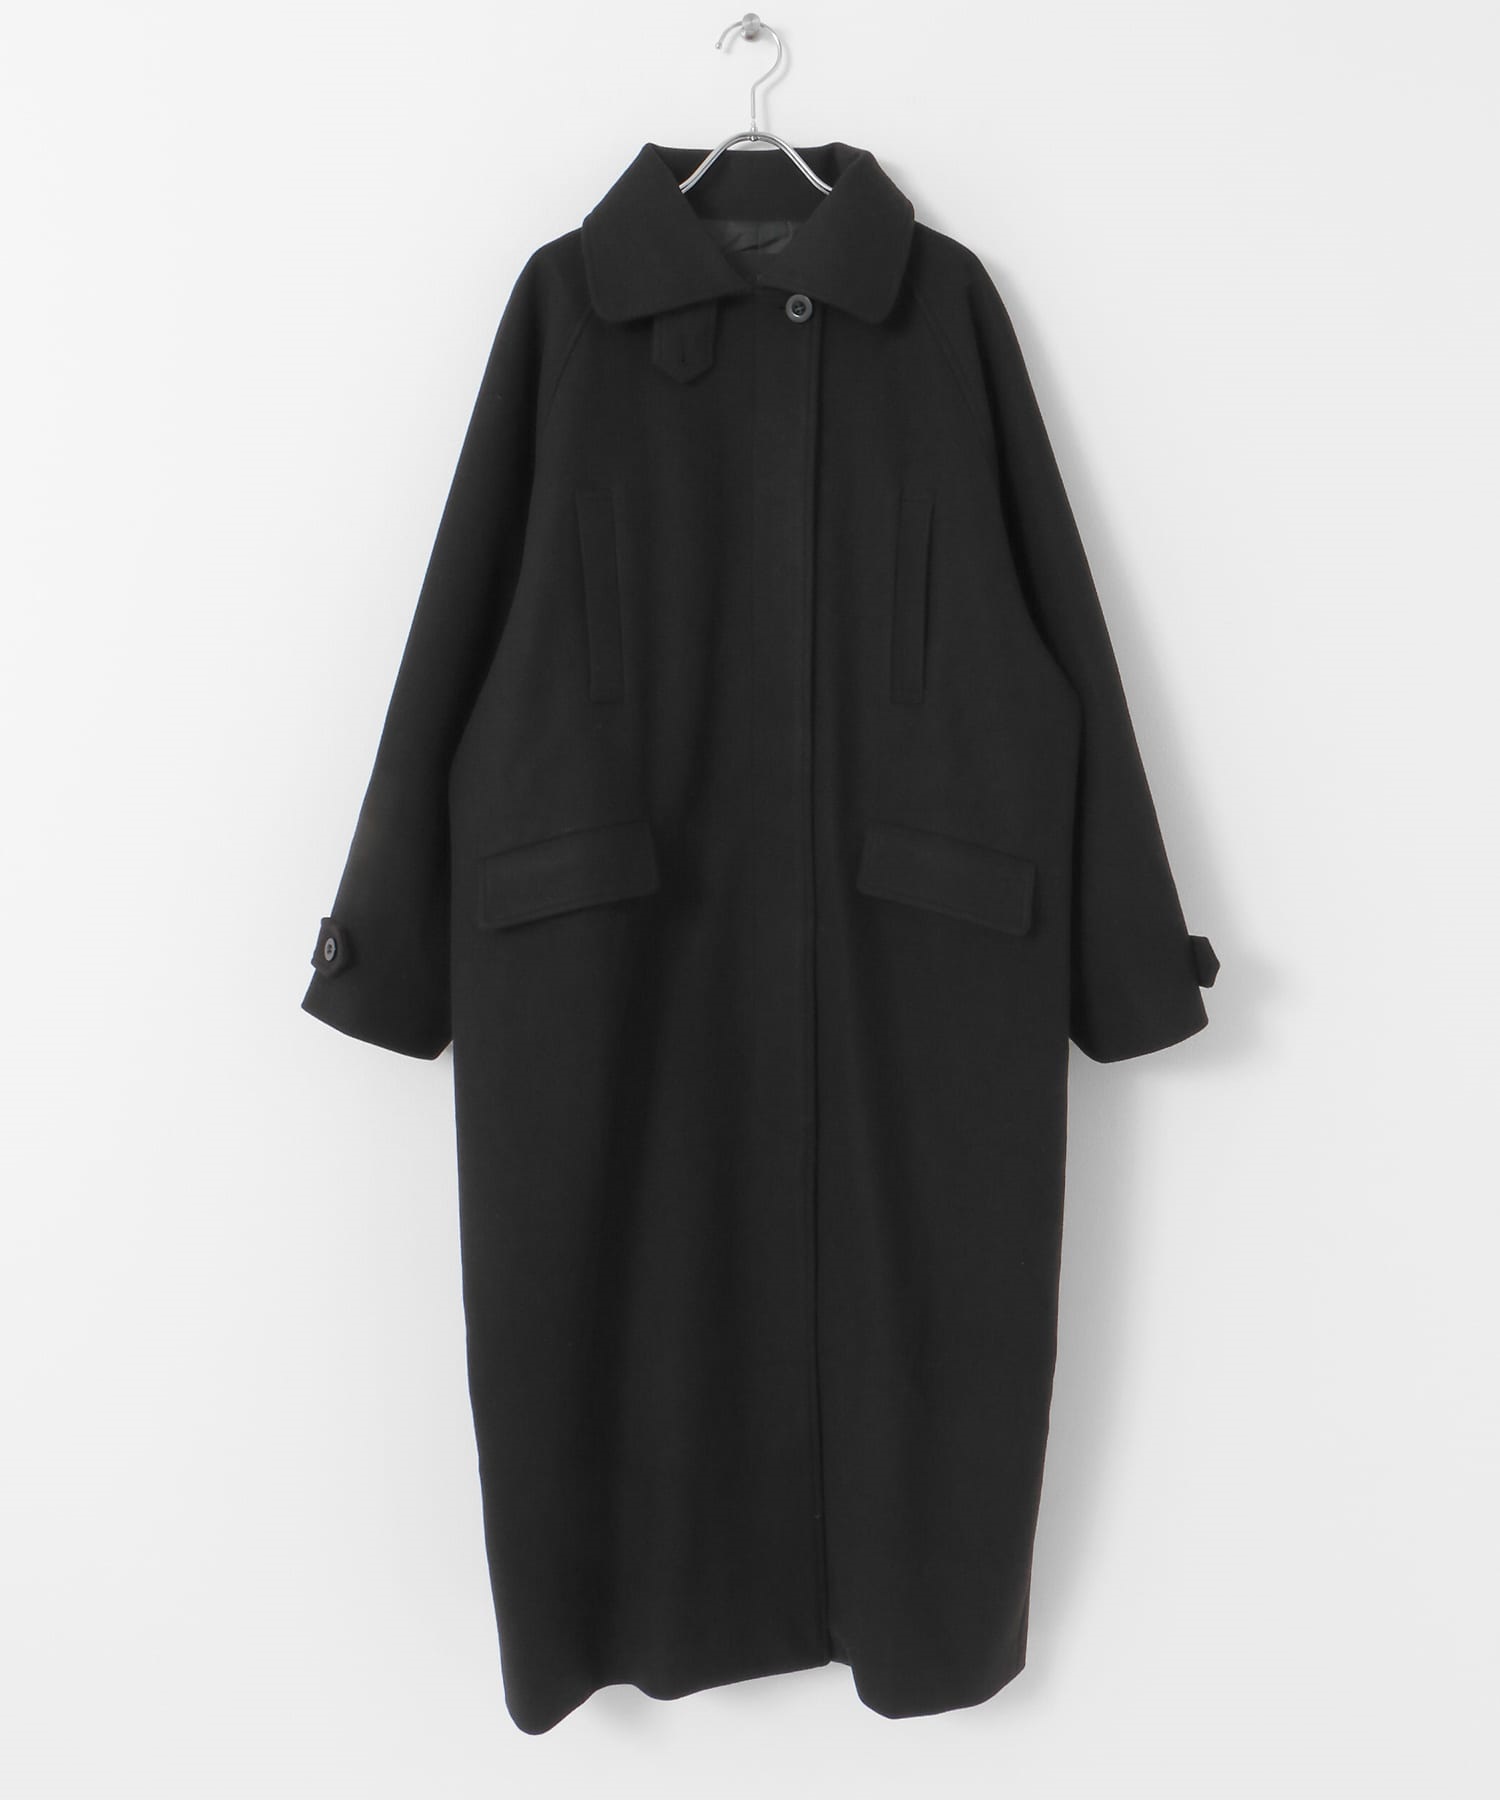 繭型長版大衣(黑色-36-BLACK)